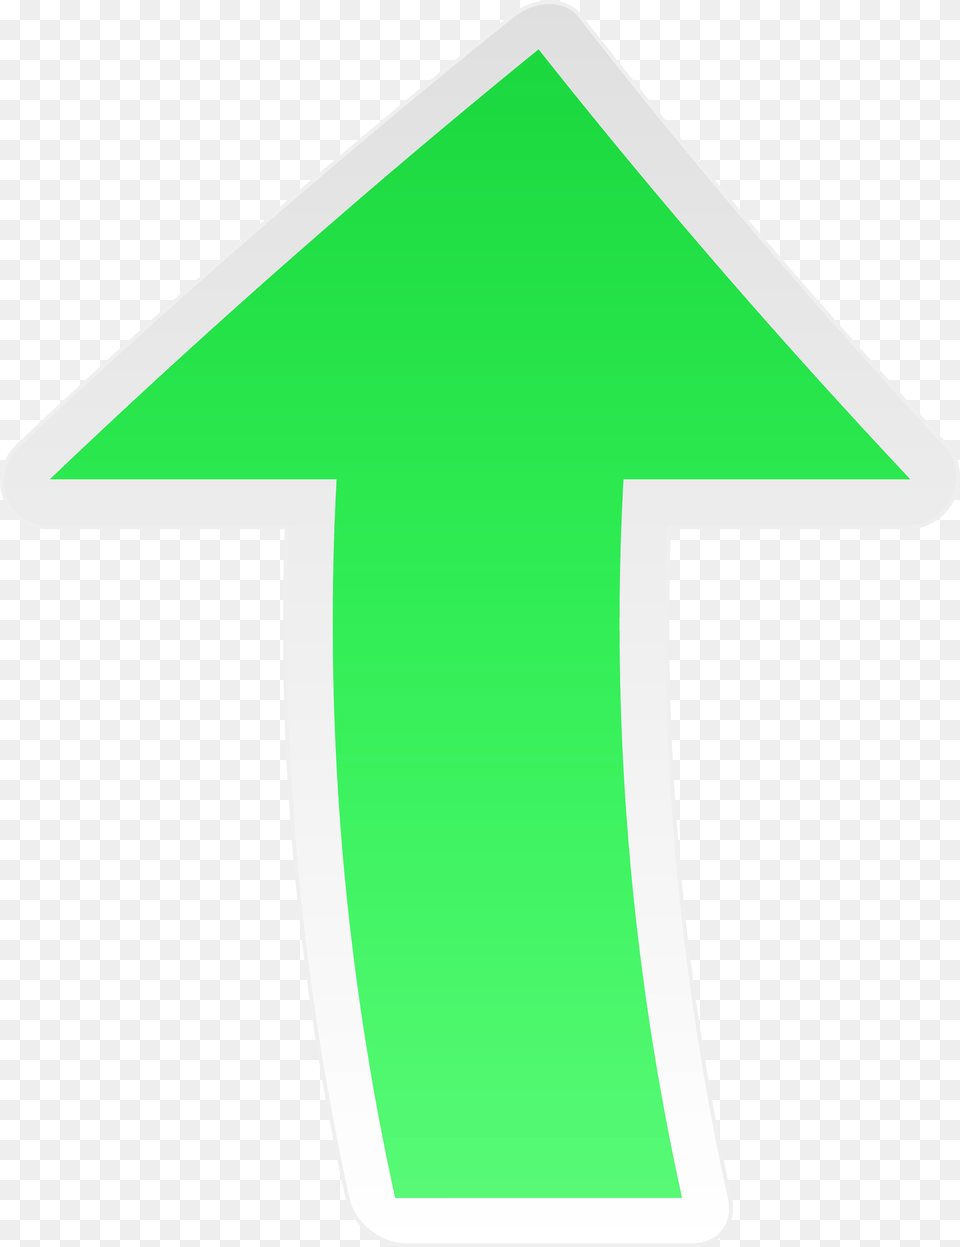 Green Arrow Up Clip Art Sign, Symbol, Cross, Text Png Image